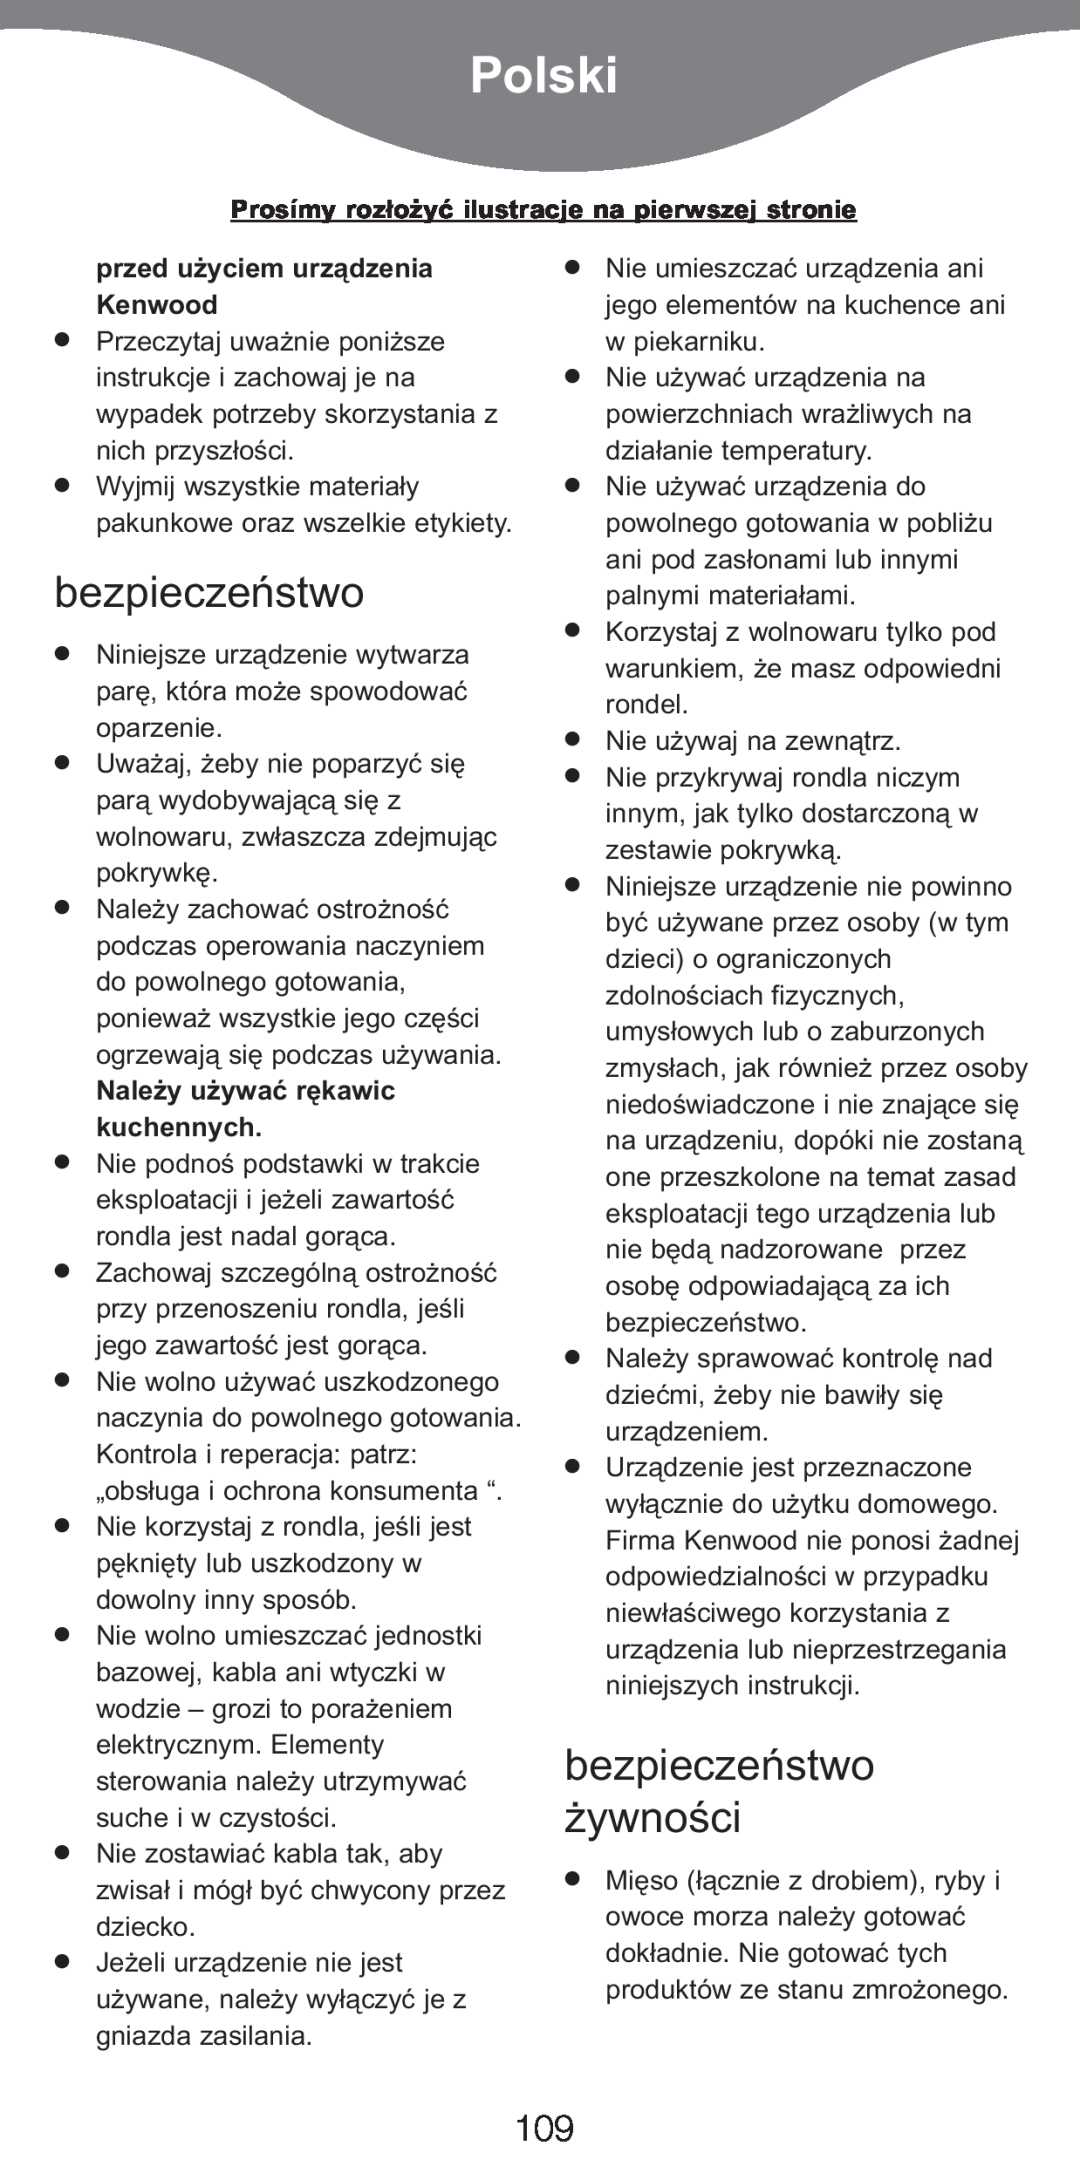 Kenwood CP707 Polski, bezpieczeństwo żywności, przed użyciem urządzenia Kenwood, Należy używać rękawic kuchennych 